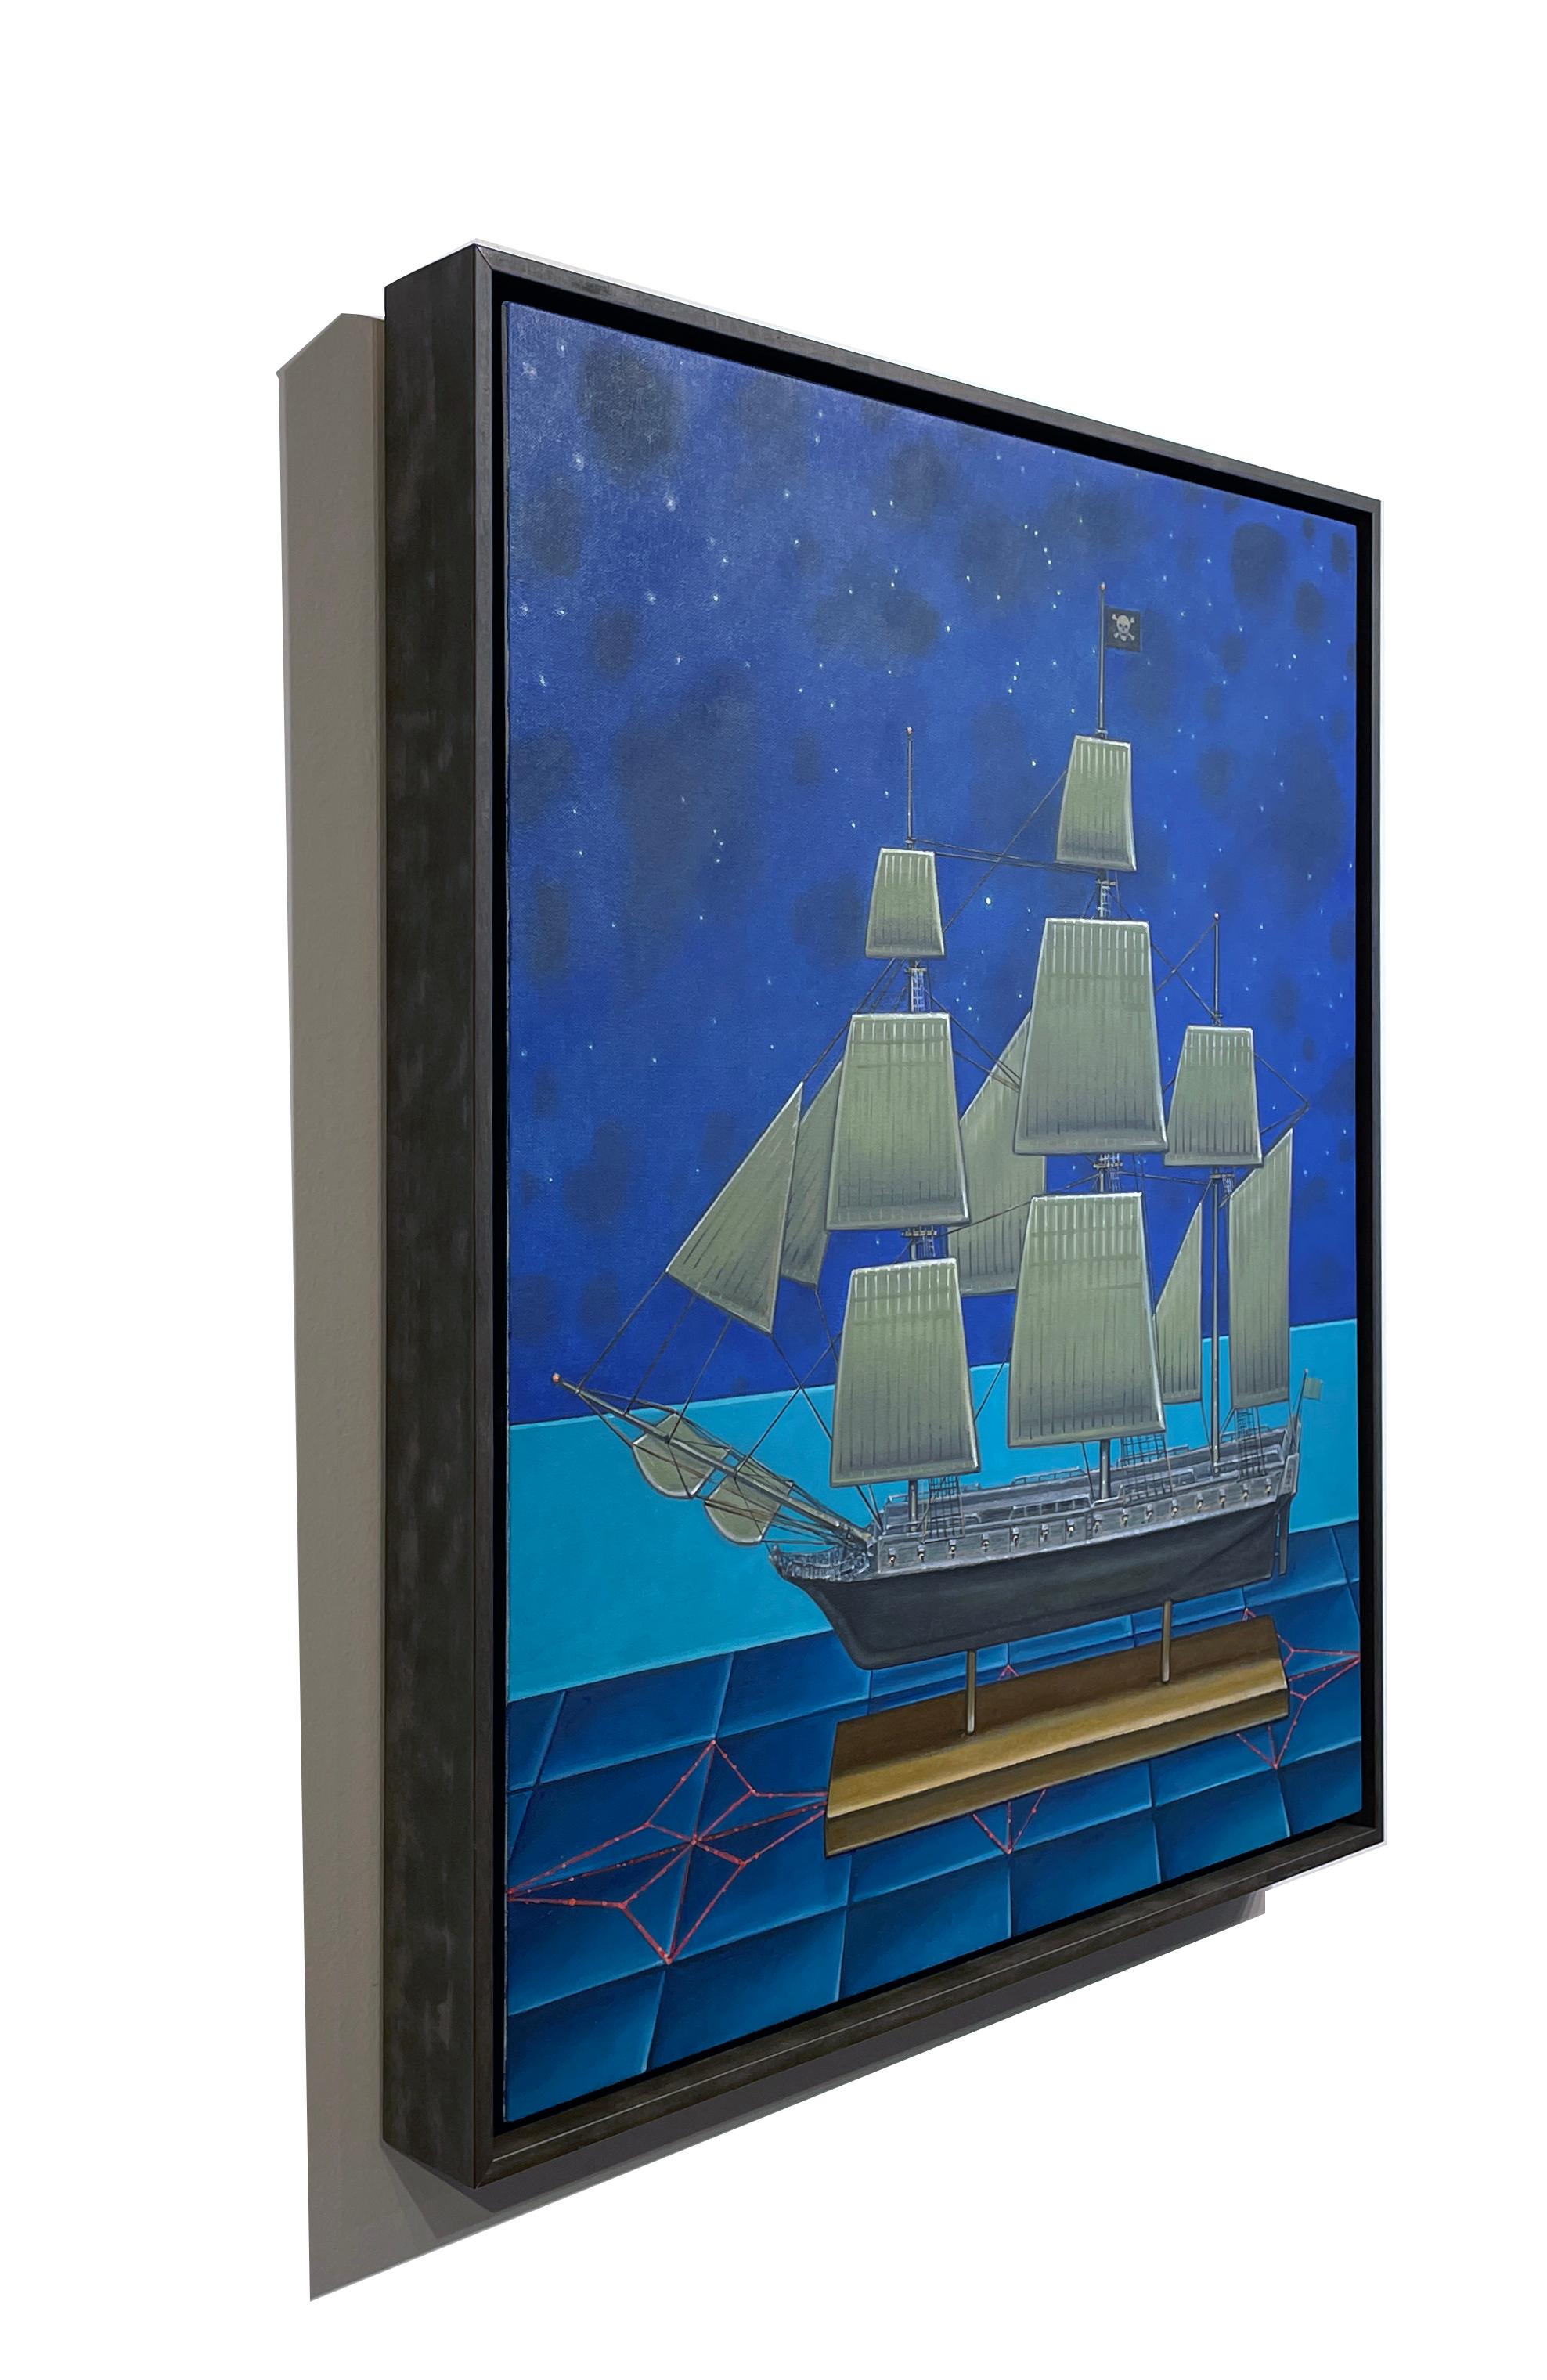 Nächtliche Überfahrt -  Modell eines Piratenschiffes und Konstellationen, Öl auf Tafel (Surrealismus), Painting, von John Hrehov